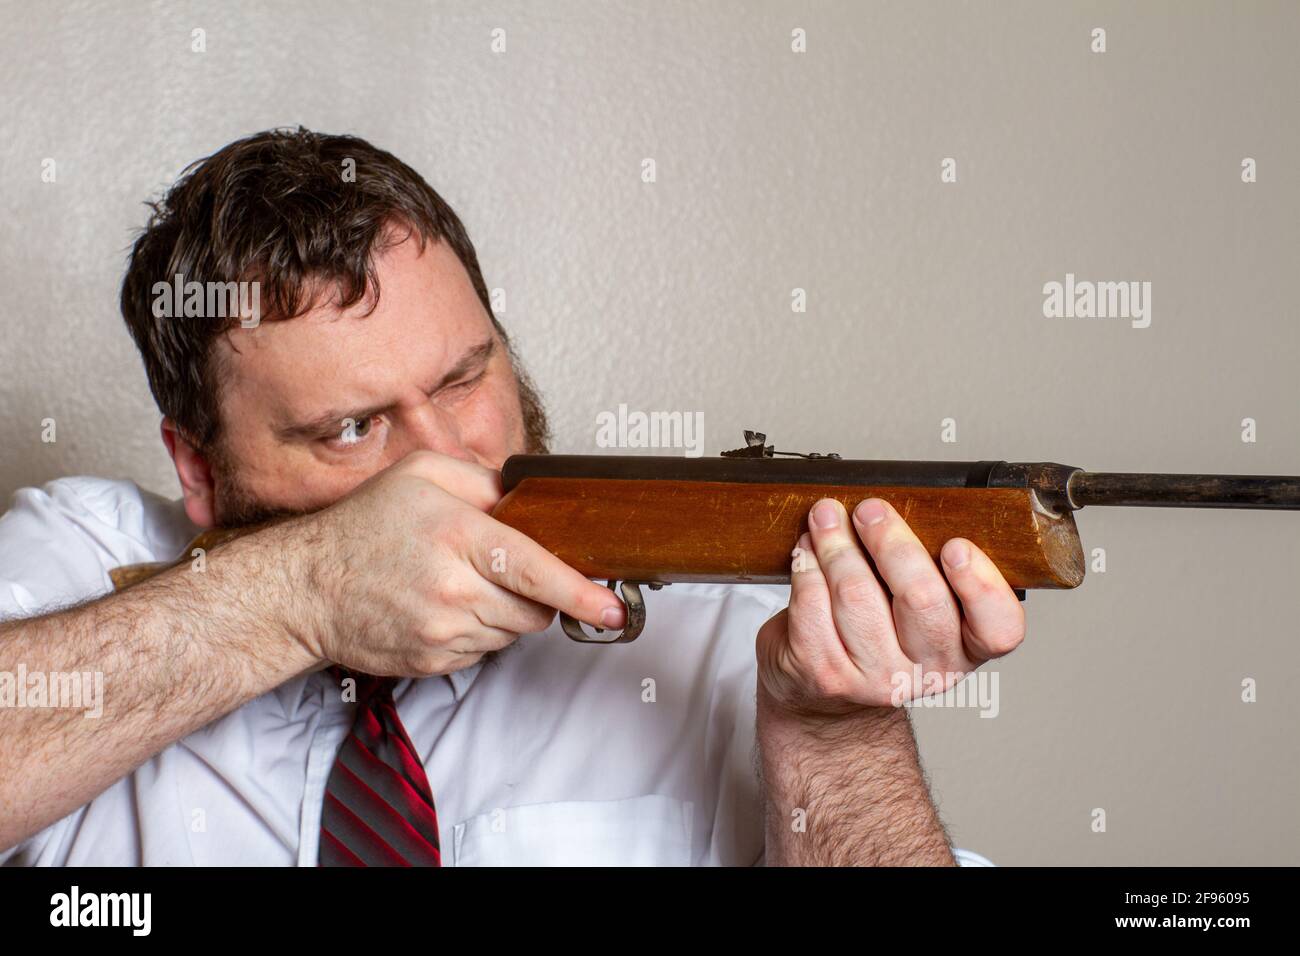 homme pointant un fusil au travail Banque D'Images